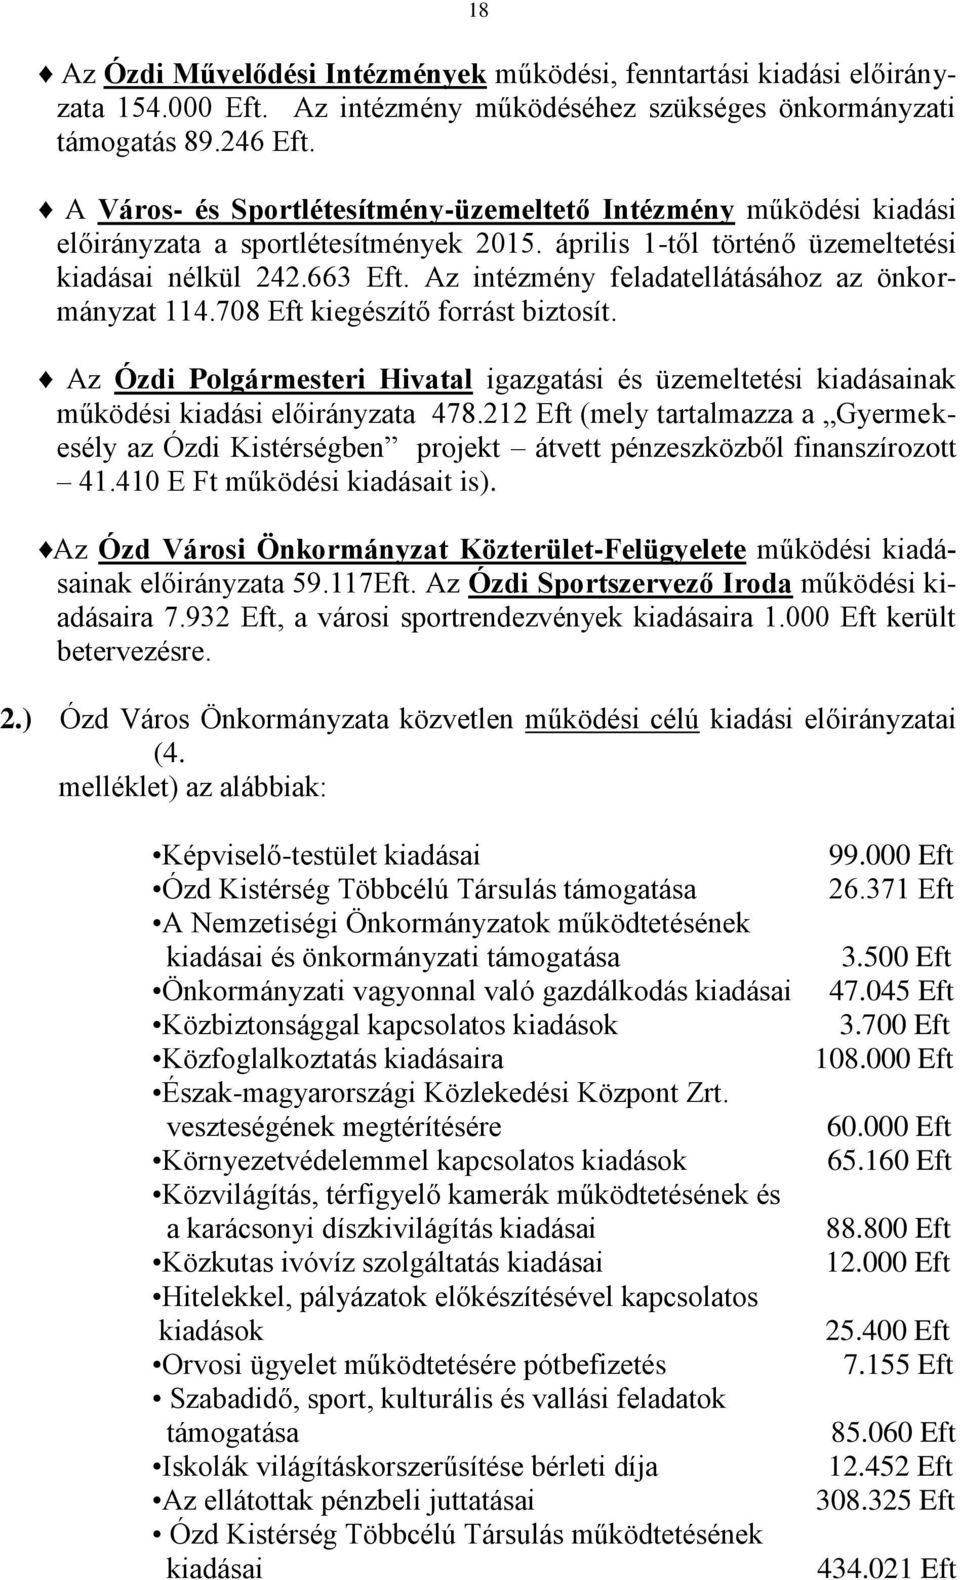 Az intézmény feladatellátásához az önkormányzat 114.708 Eft kiegészítő forrást biztosít. Az Ózdi Polgármesteri Hivatal igazgatási és üzemeltetési kiadásainak működési kiadási előirányzata 478.